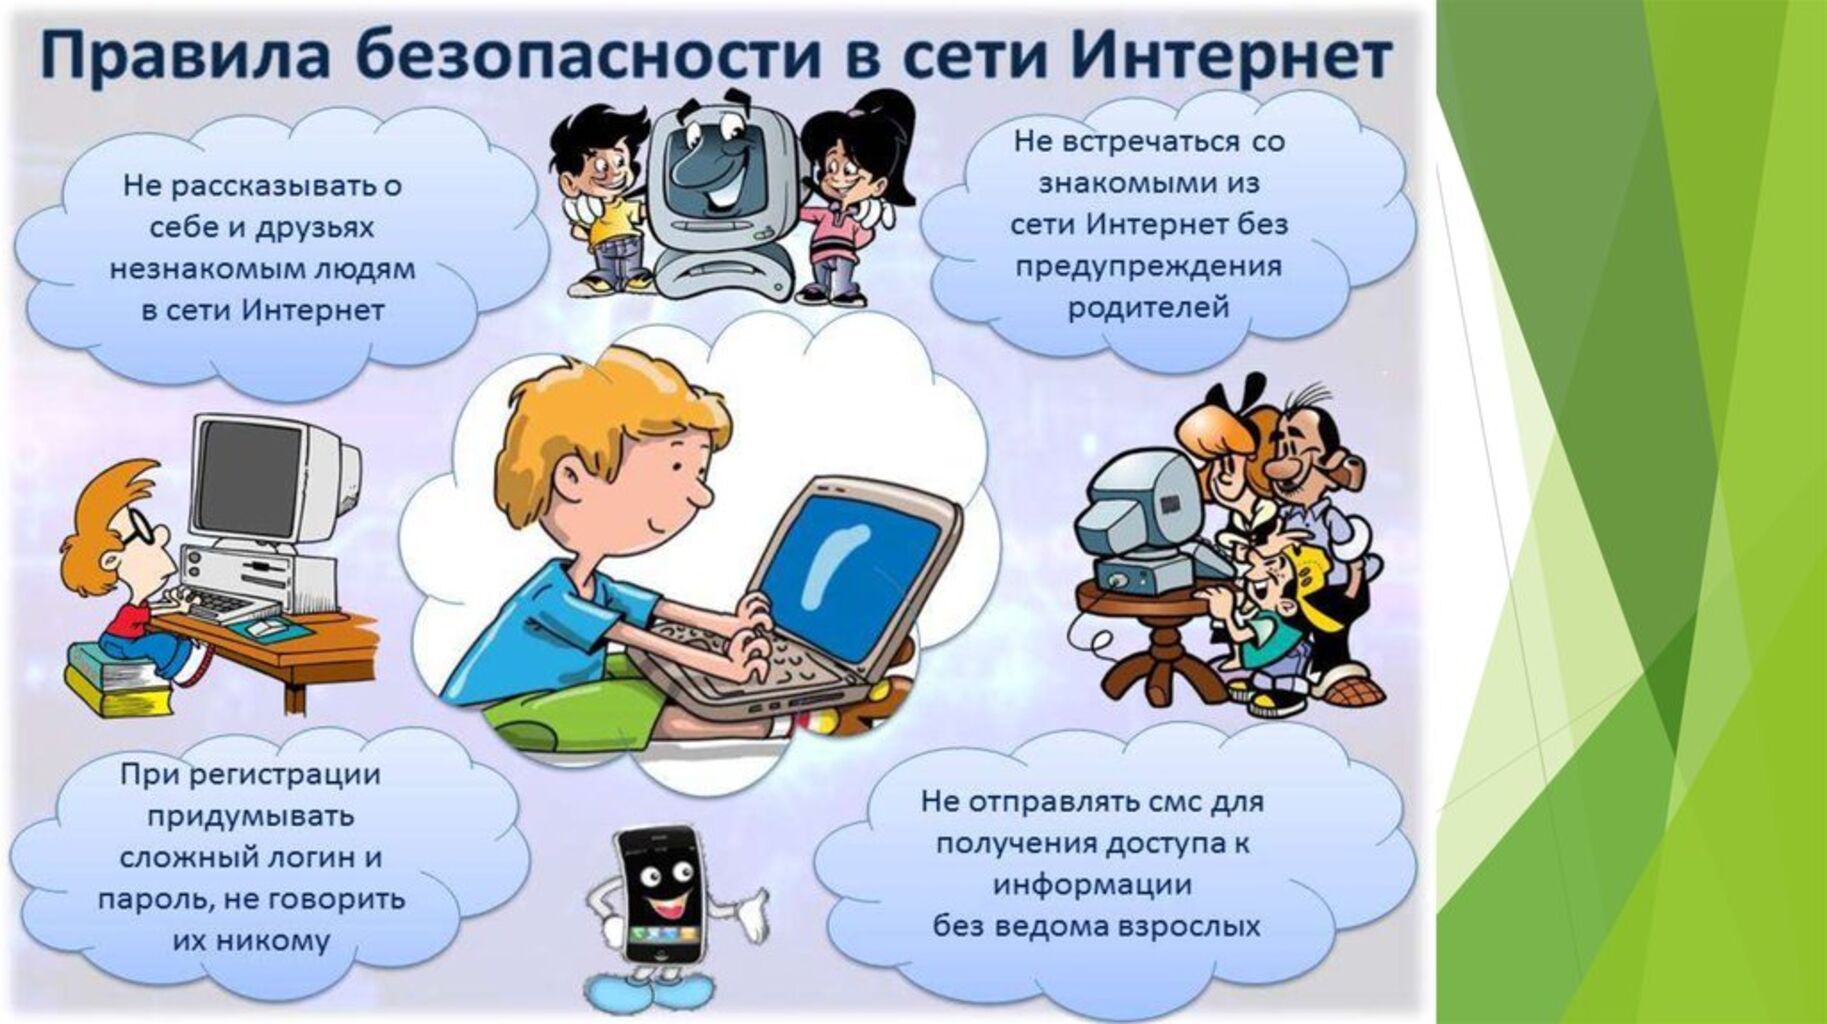 Час информации интернет. Безопасность в сети интернет. Безопасность в интернете для детей. Правила безопасности в сети интернет. Опасности в интернете для детей.